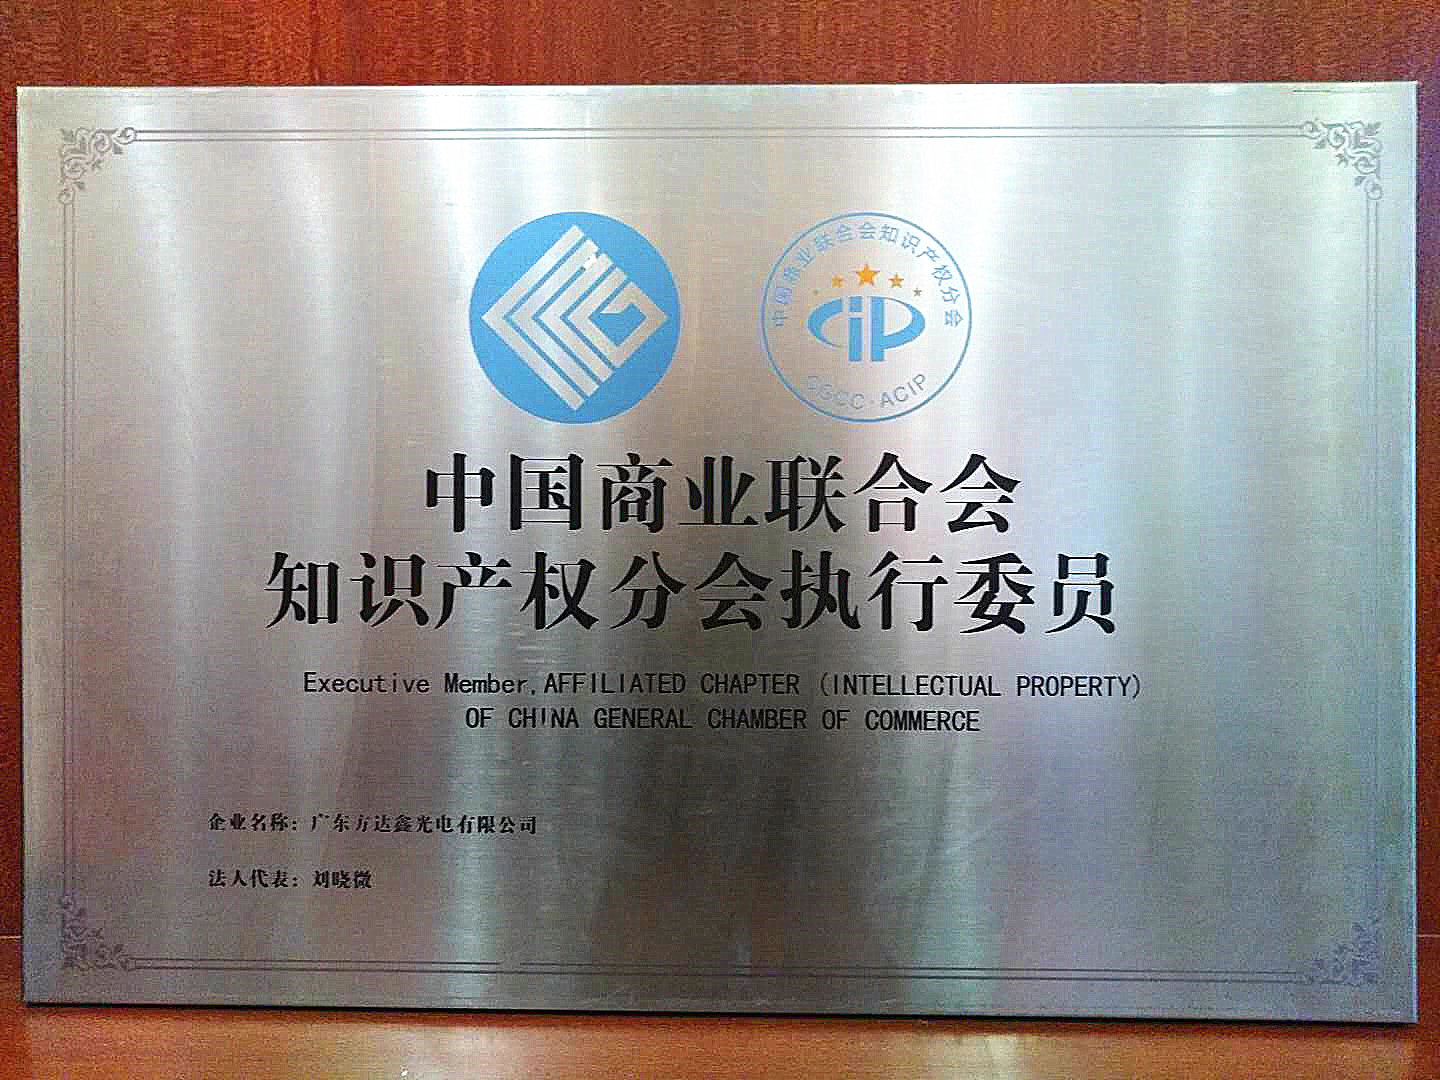 中国商业联合会知识产权分会执行委员